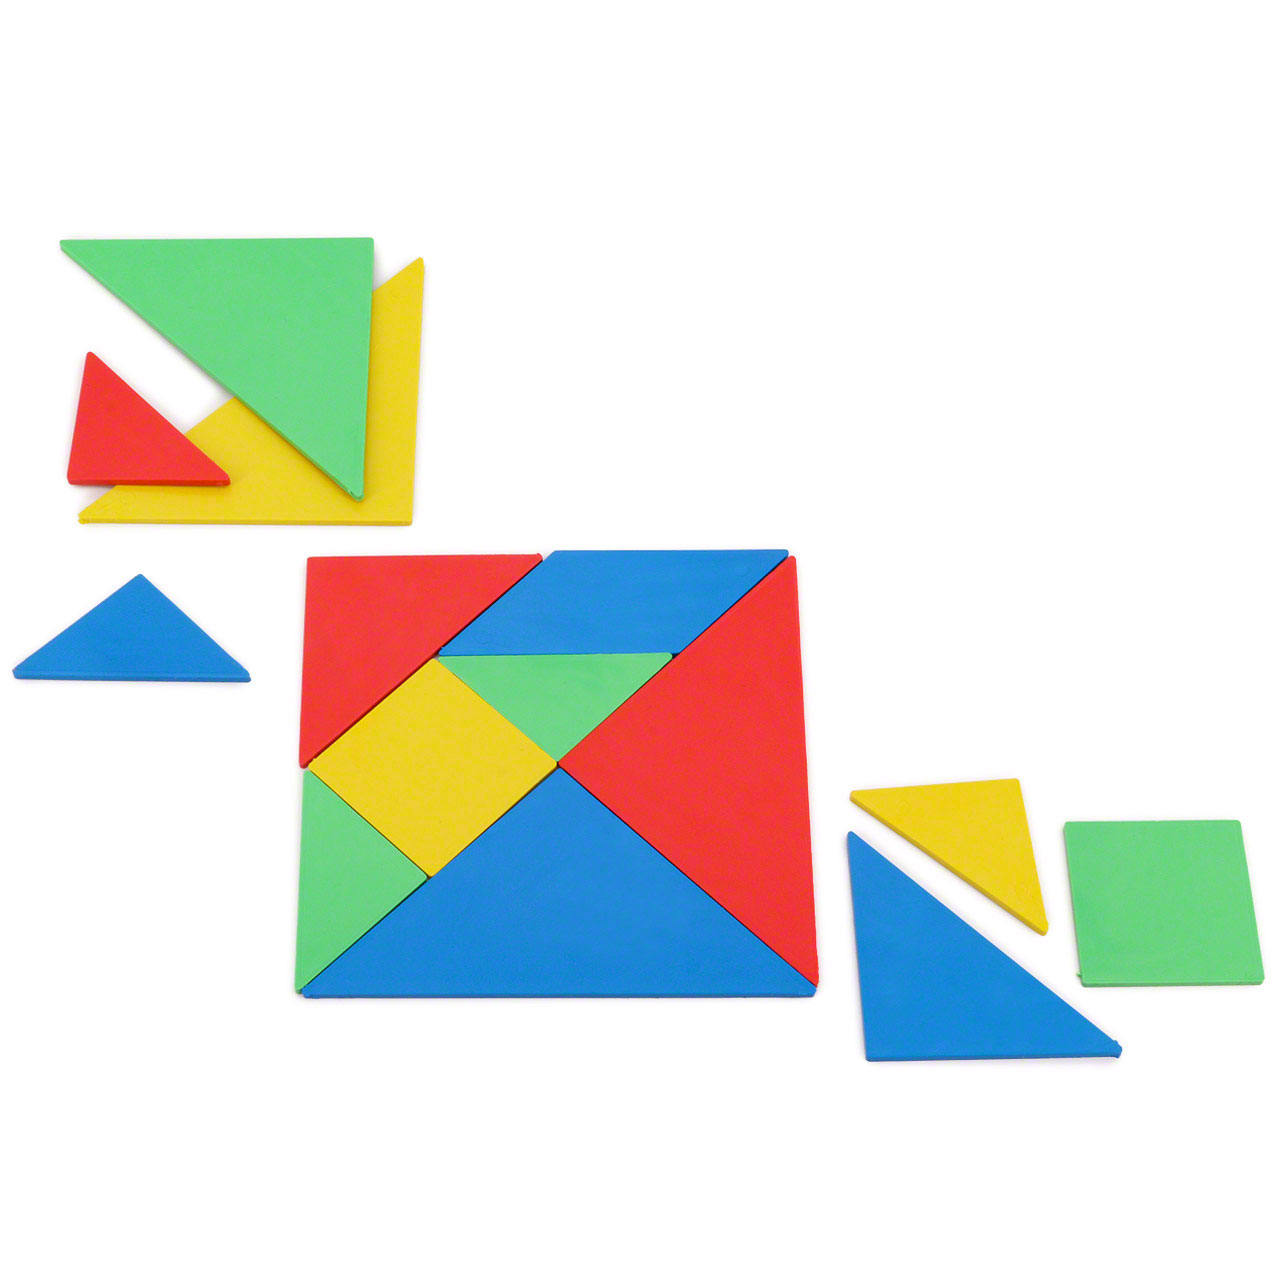 Bunt Hölzern Tangram Puzzle Spielzeug Geometrie Kinder Pädagigisches Lernspiel 